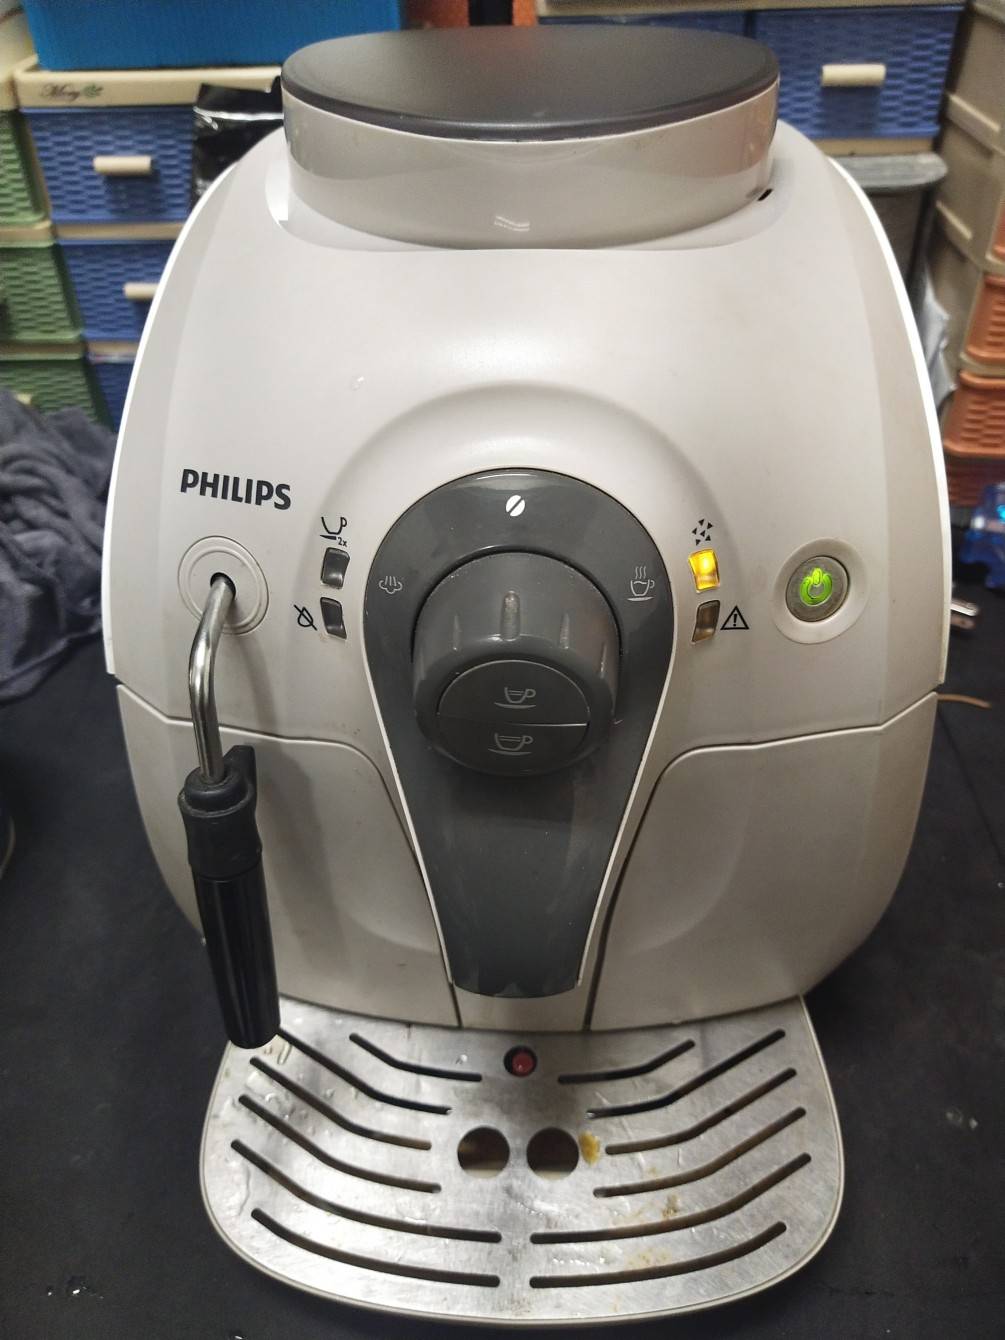 saeco-trevl-迪郎奇-4000-全自動咖啡機-kiub半自動咖啡機維修-零件更新-大保養維修